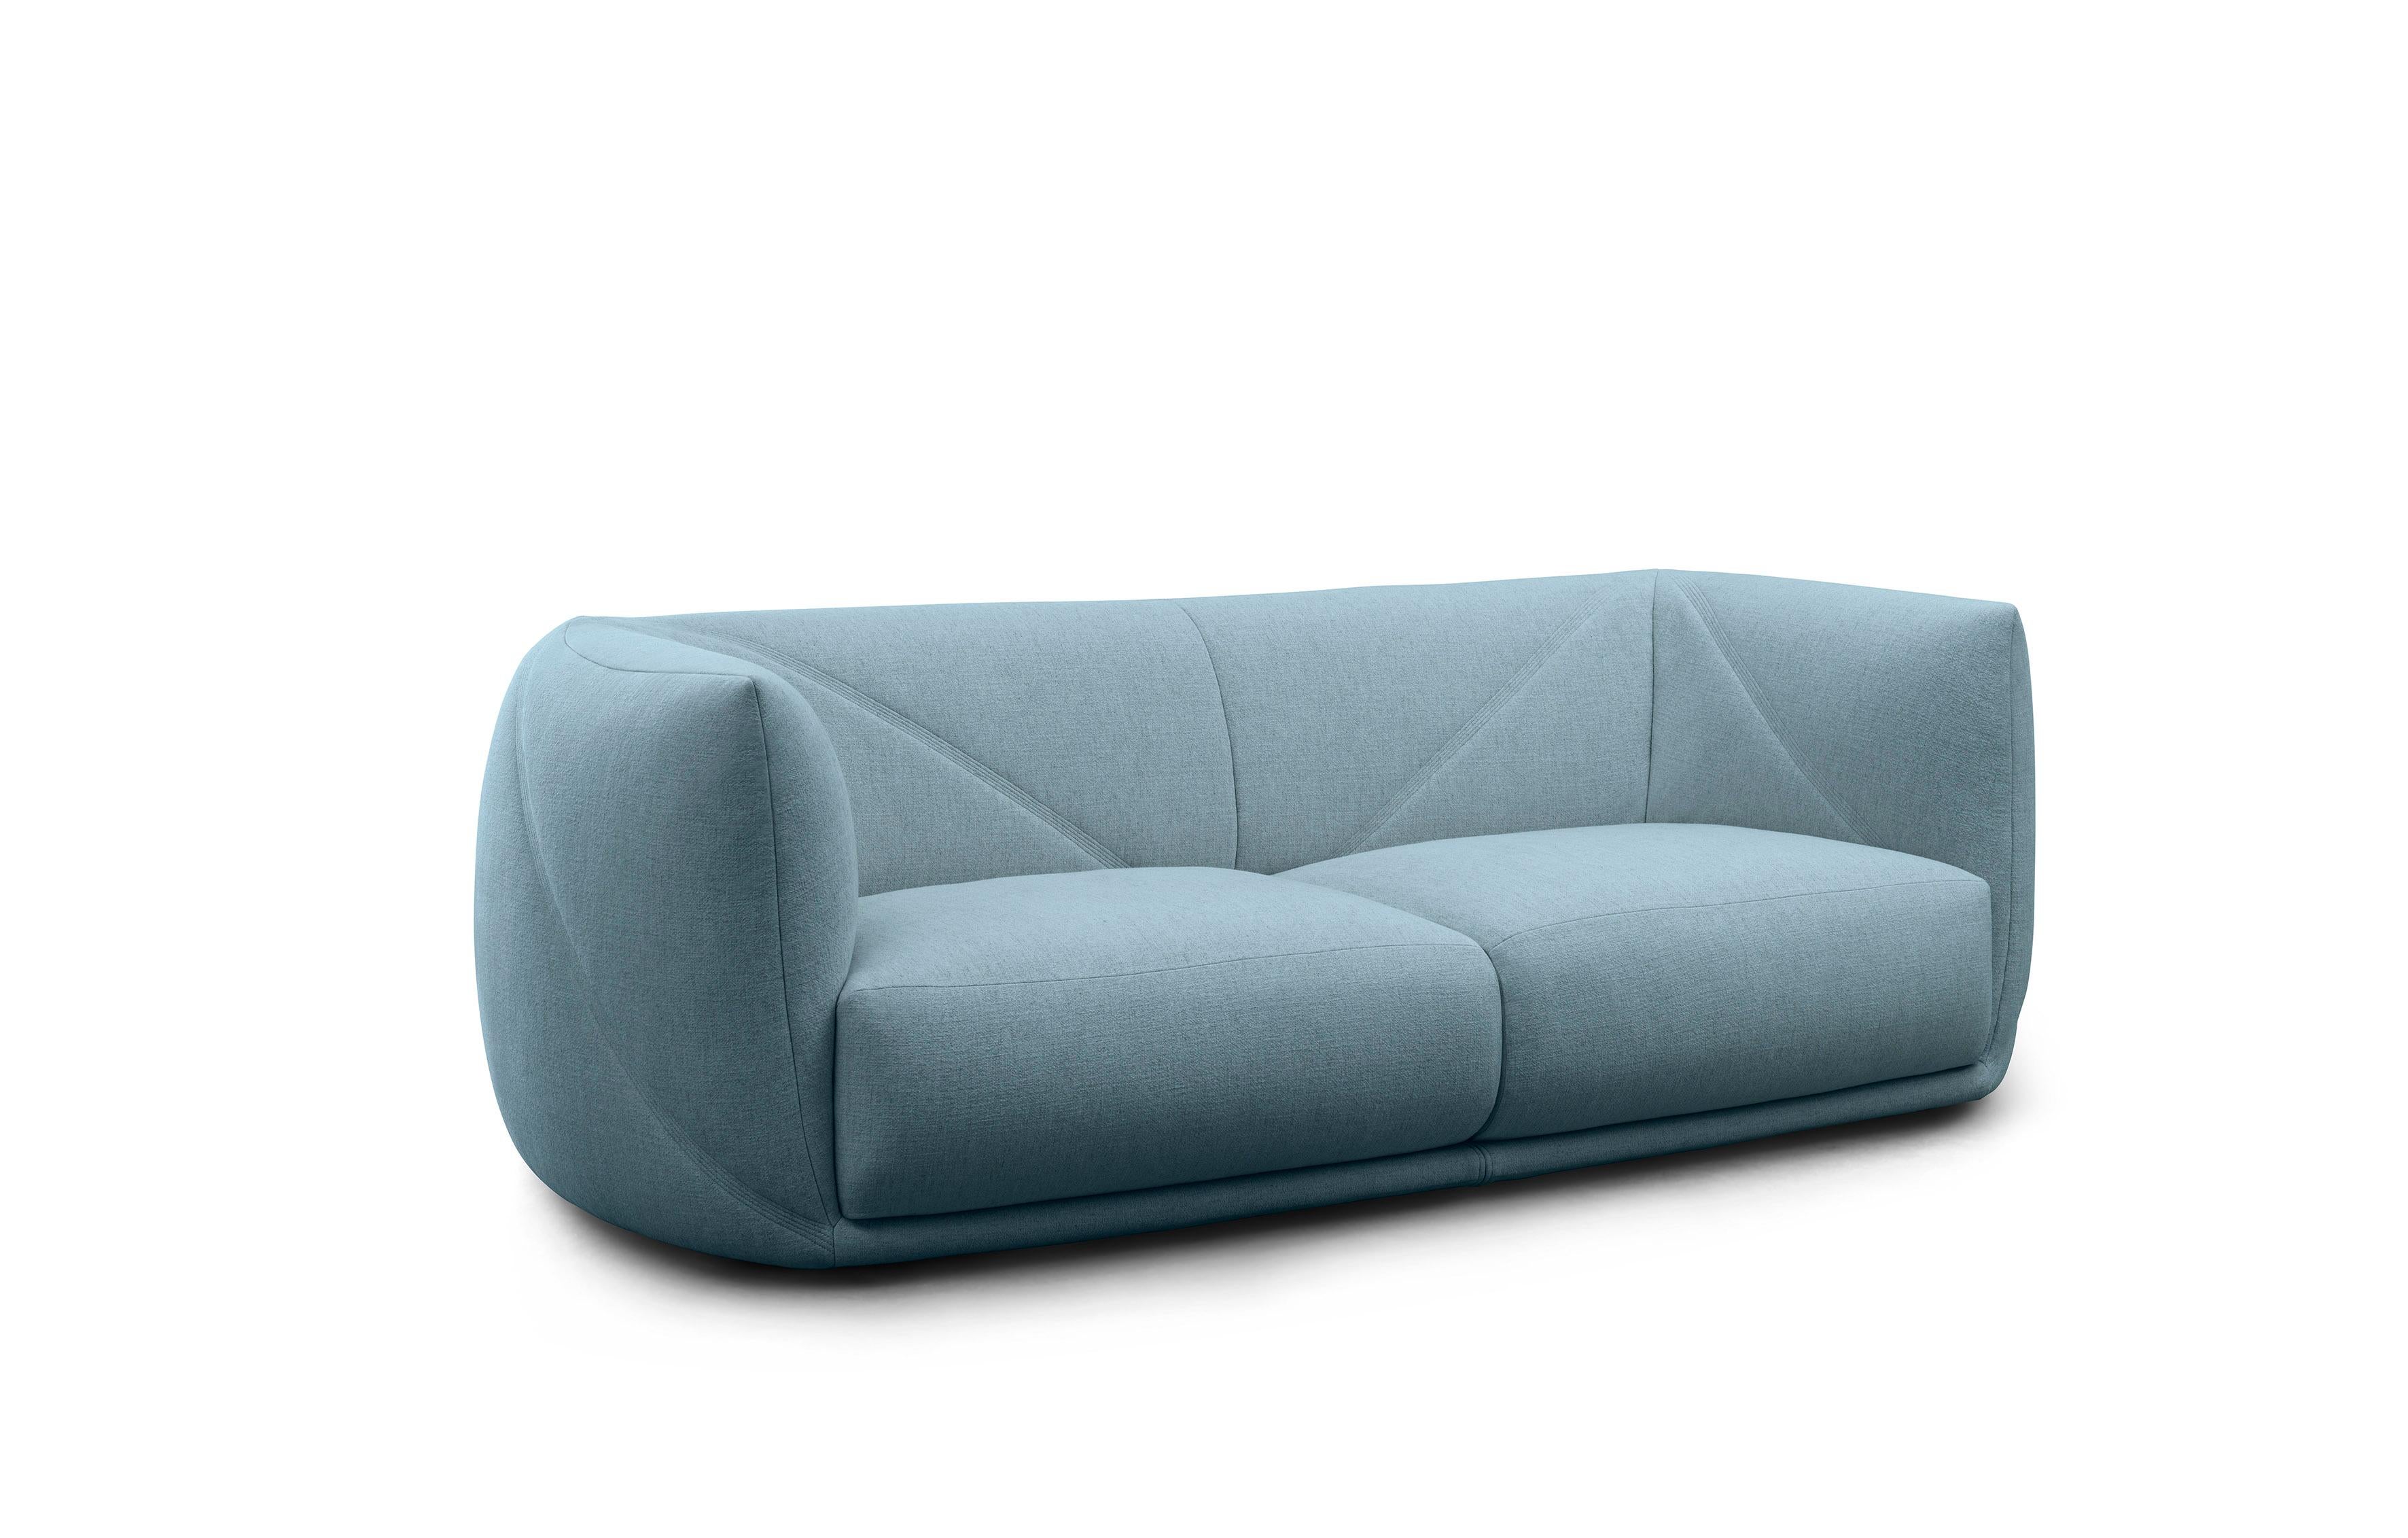 Fabric Saba Vela Sofa Bed  by Zanellato Bortotto For Sale